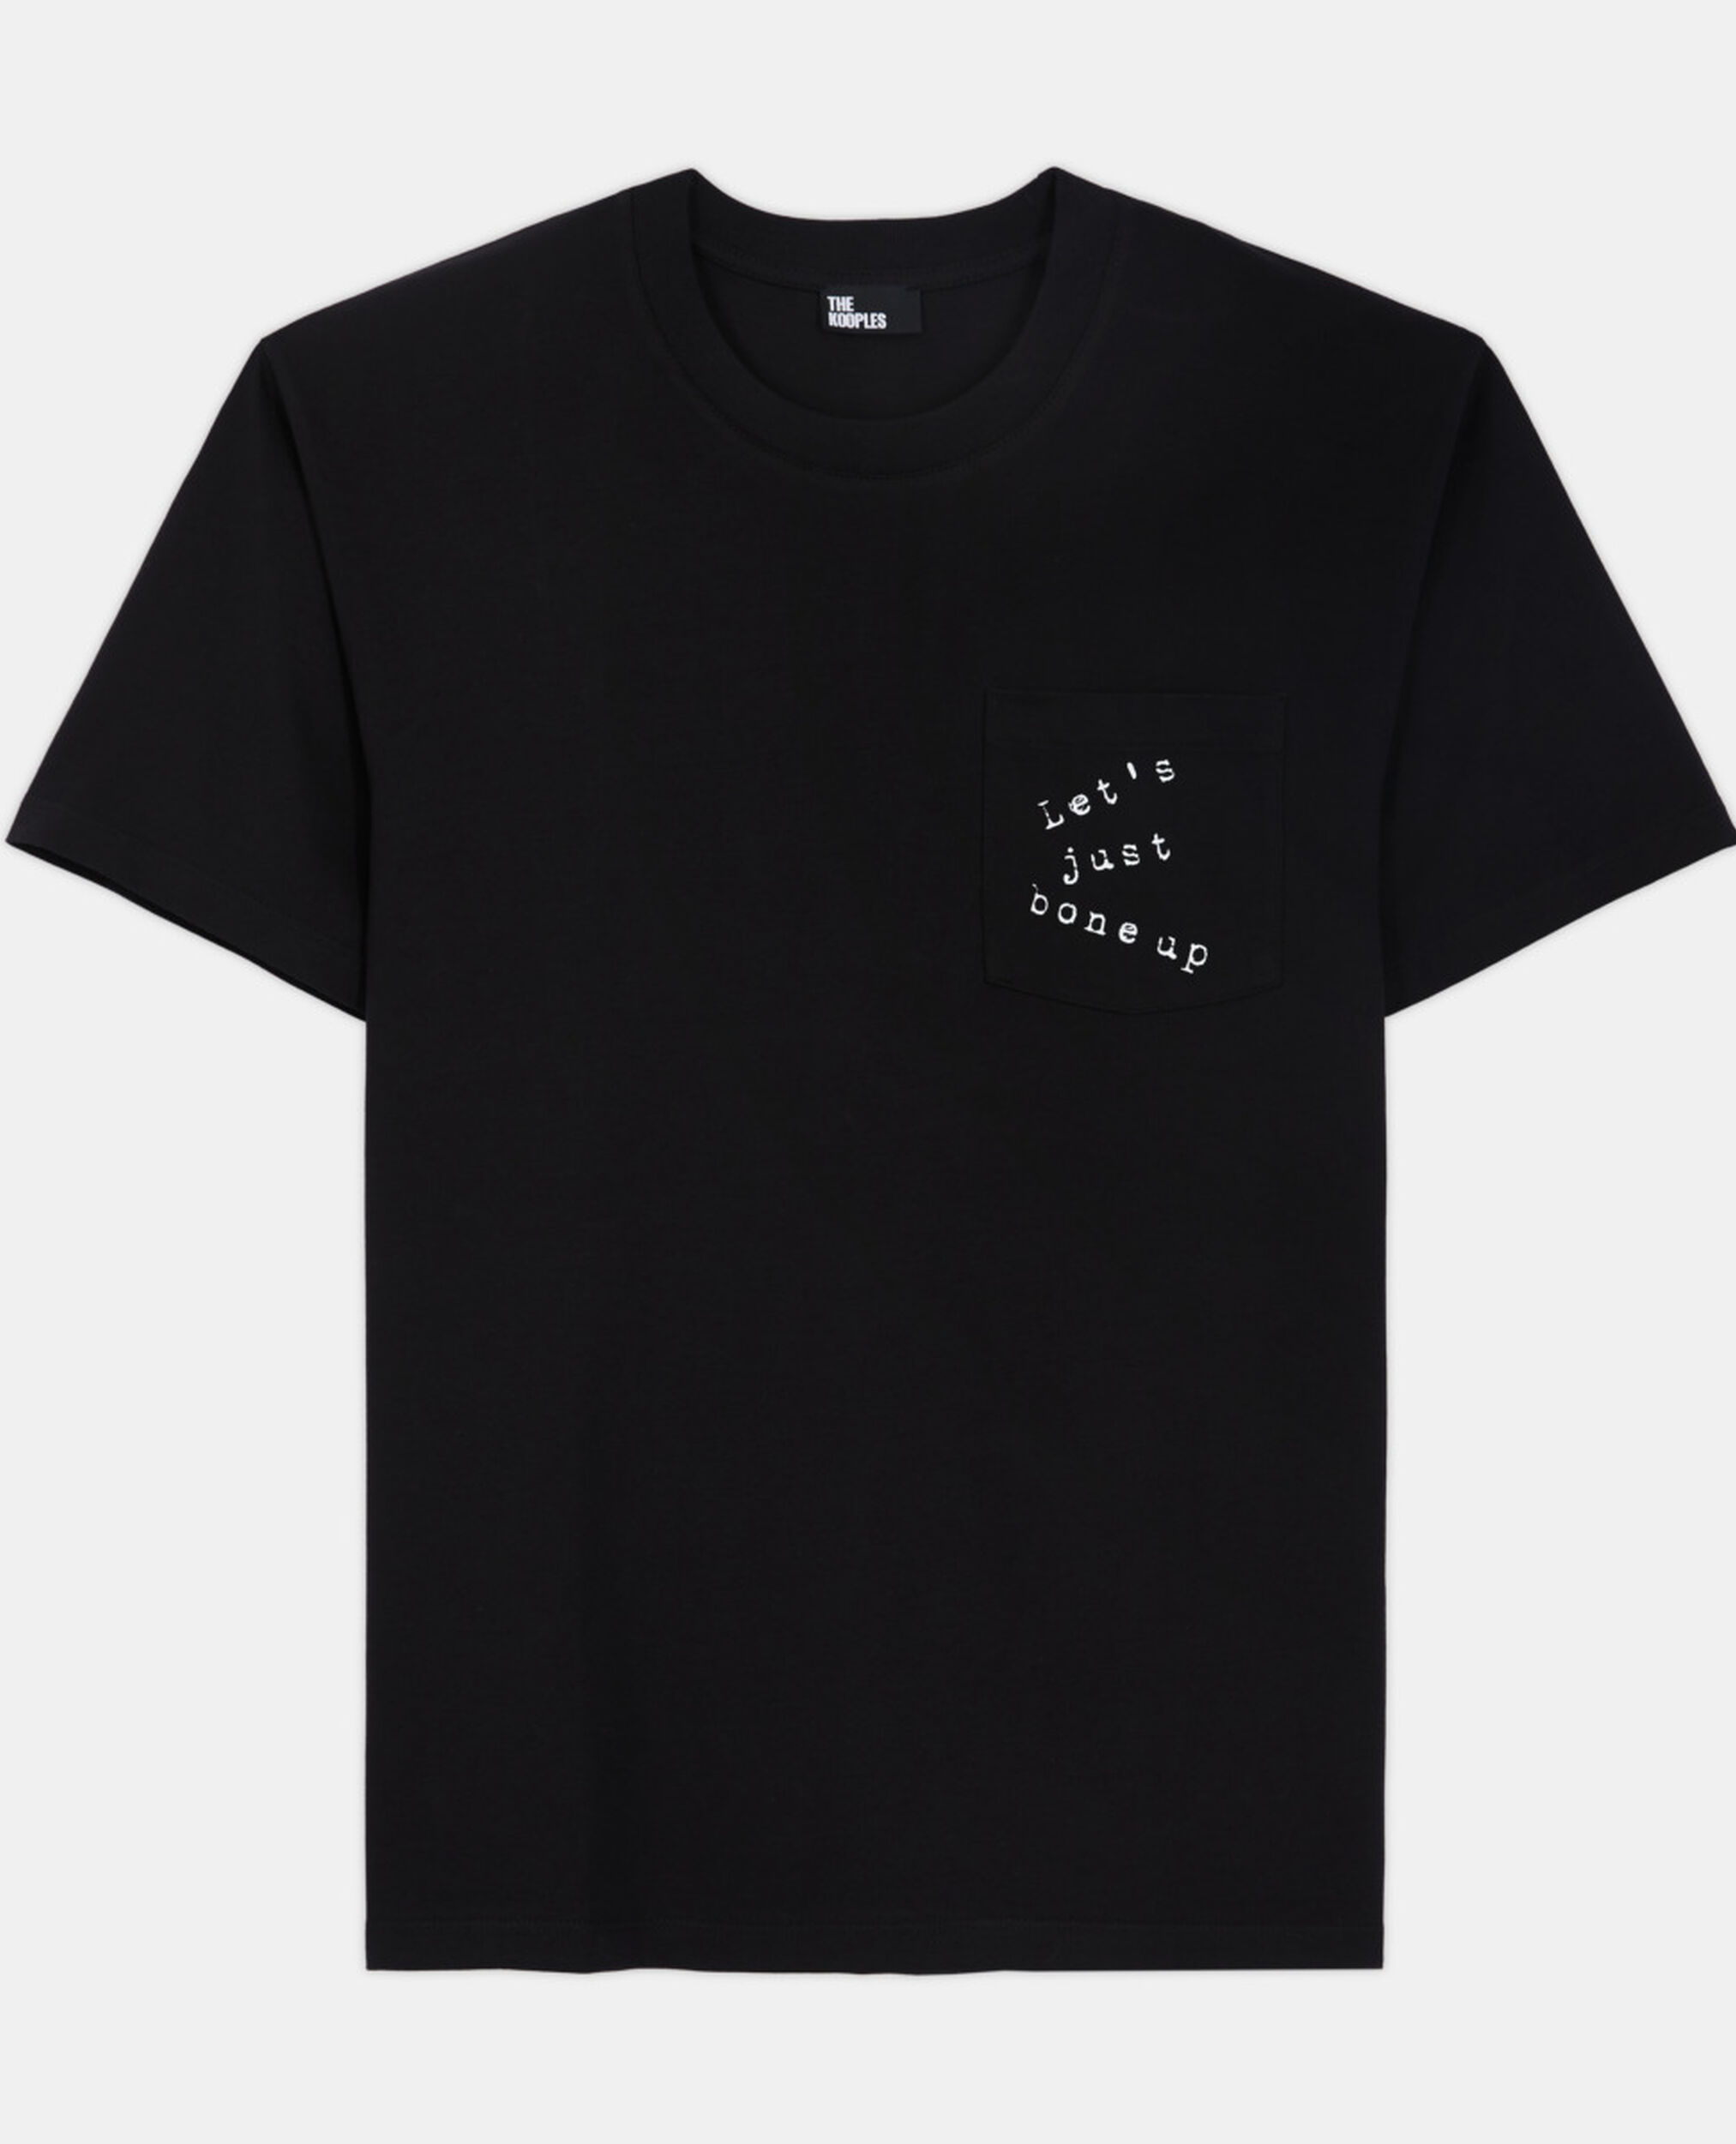 Black screen print T-shirt, BLACK, hi-res image number null